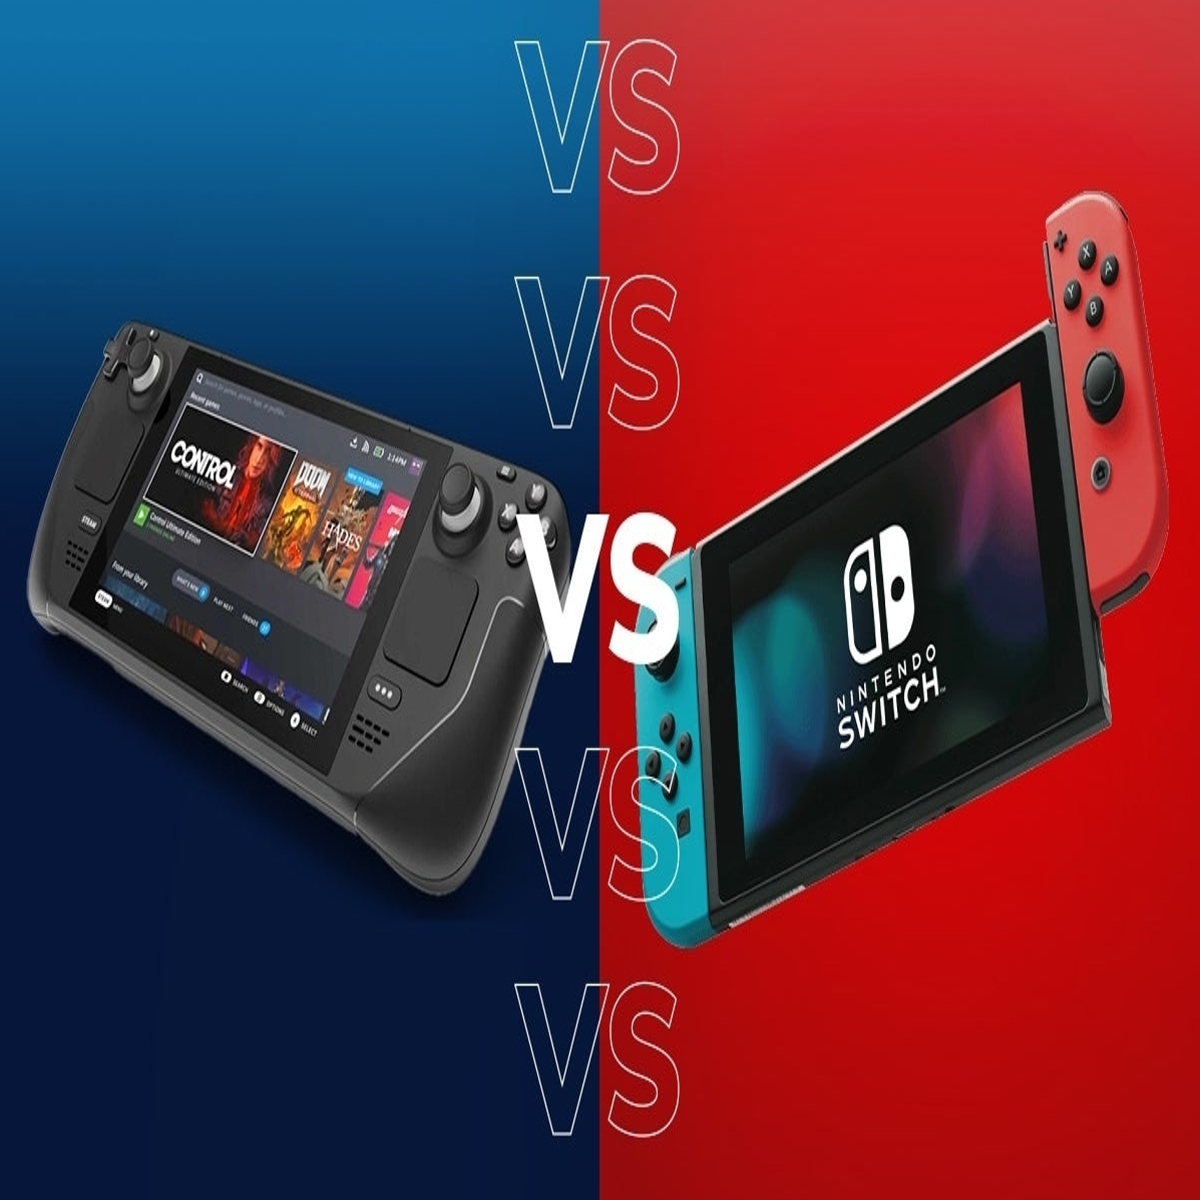 Nintendo Switch vs Steam Deck: compare ficha técnica e preço dos